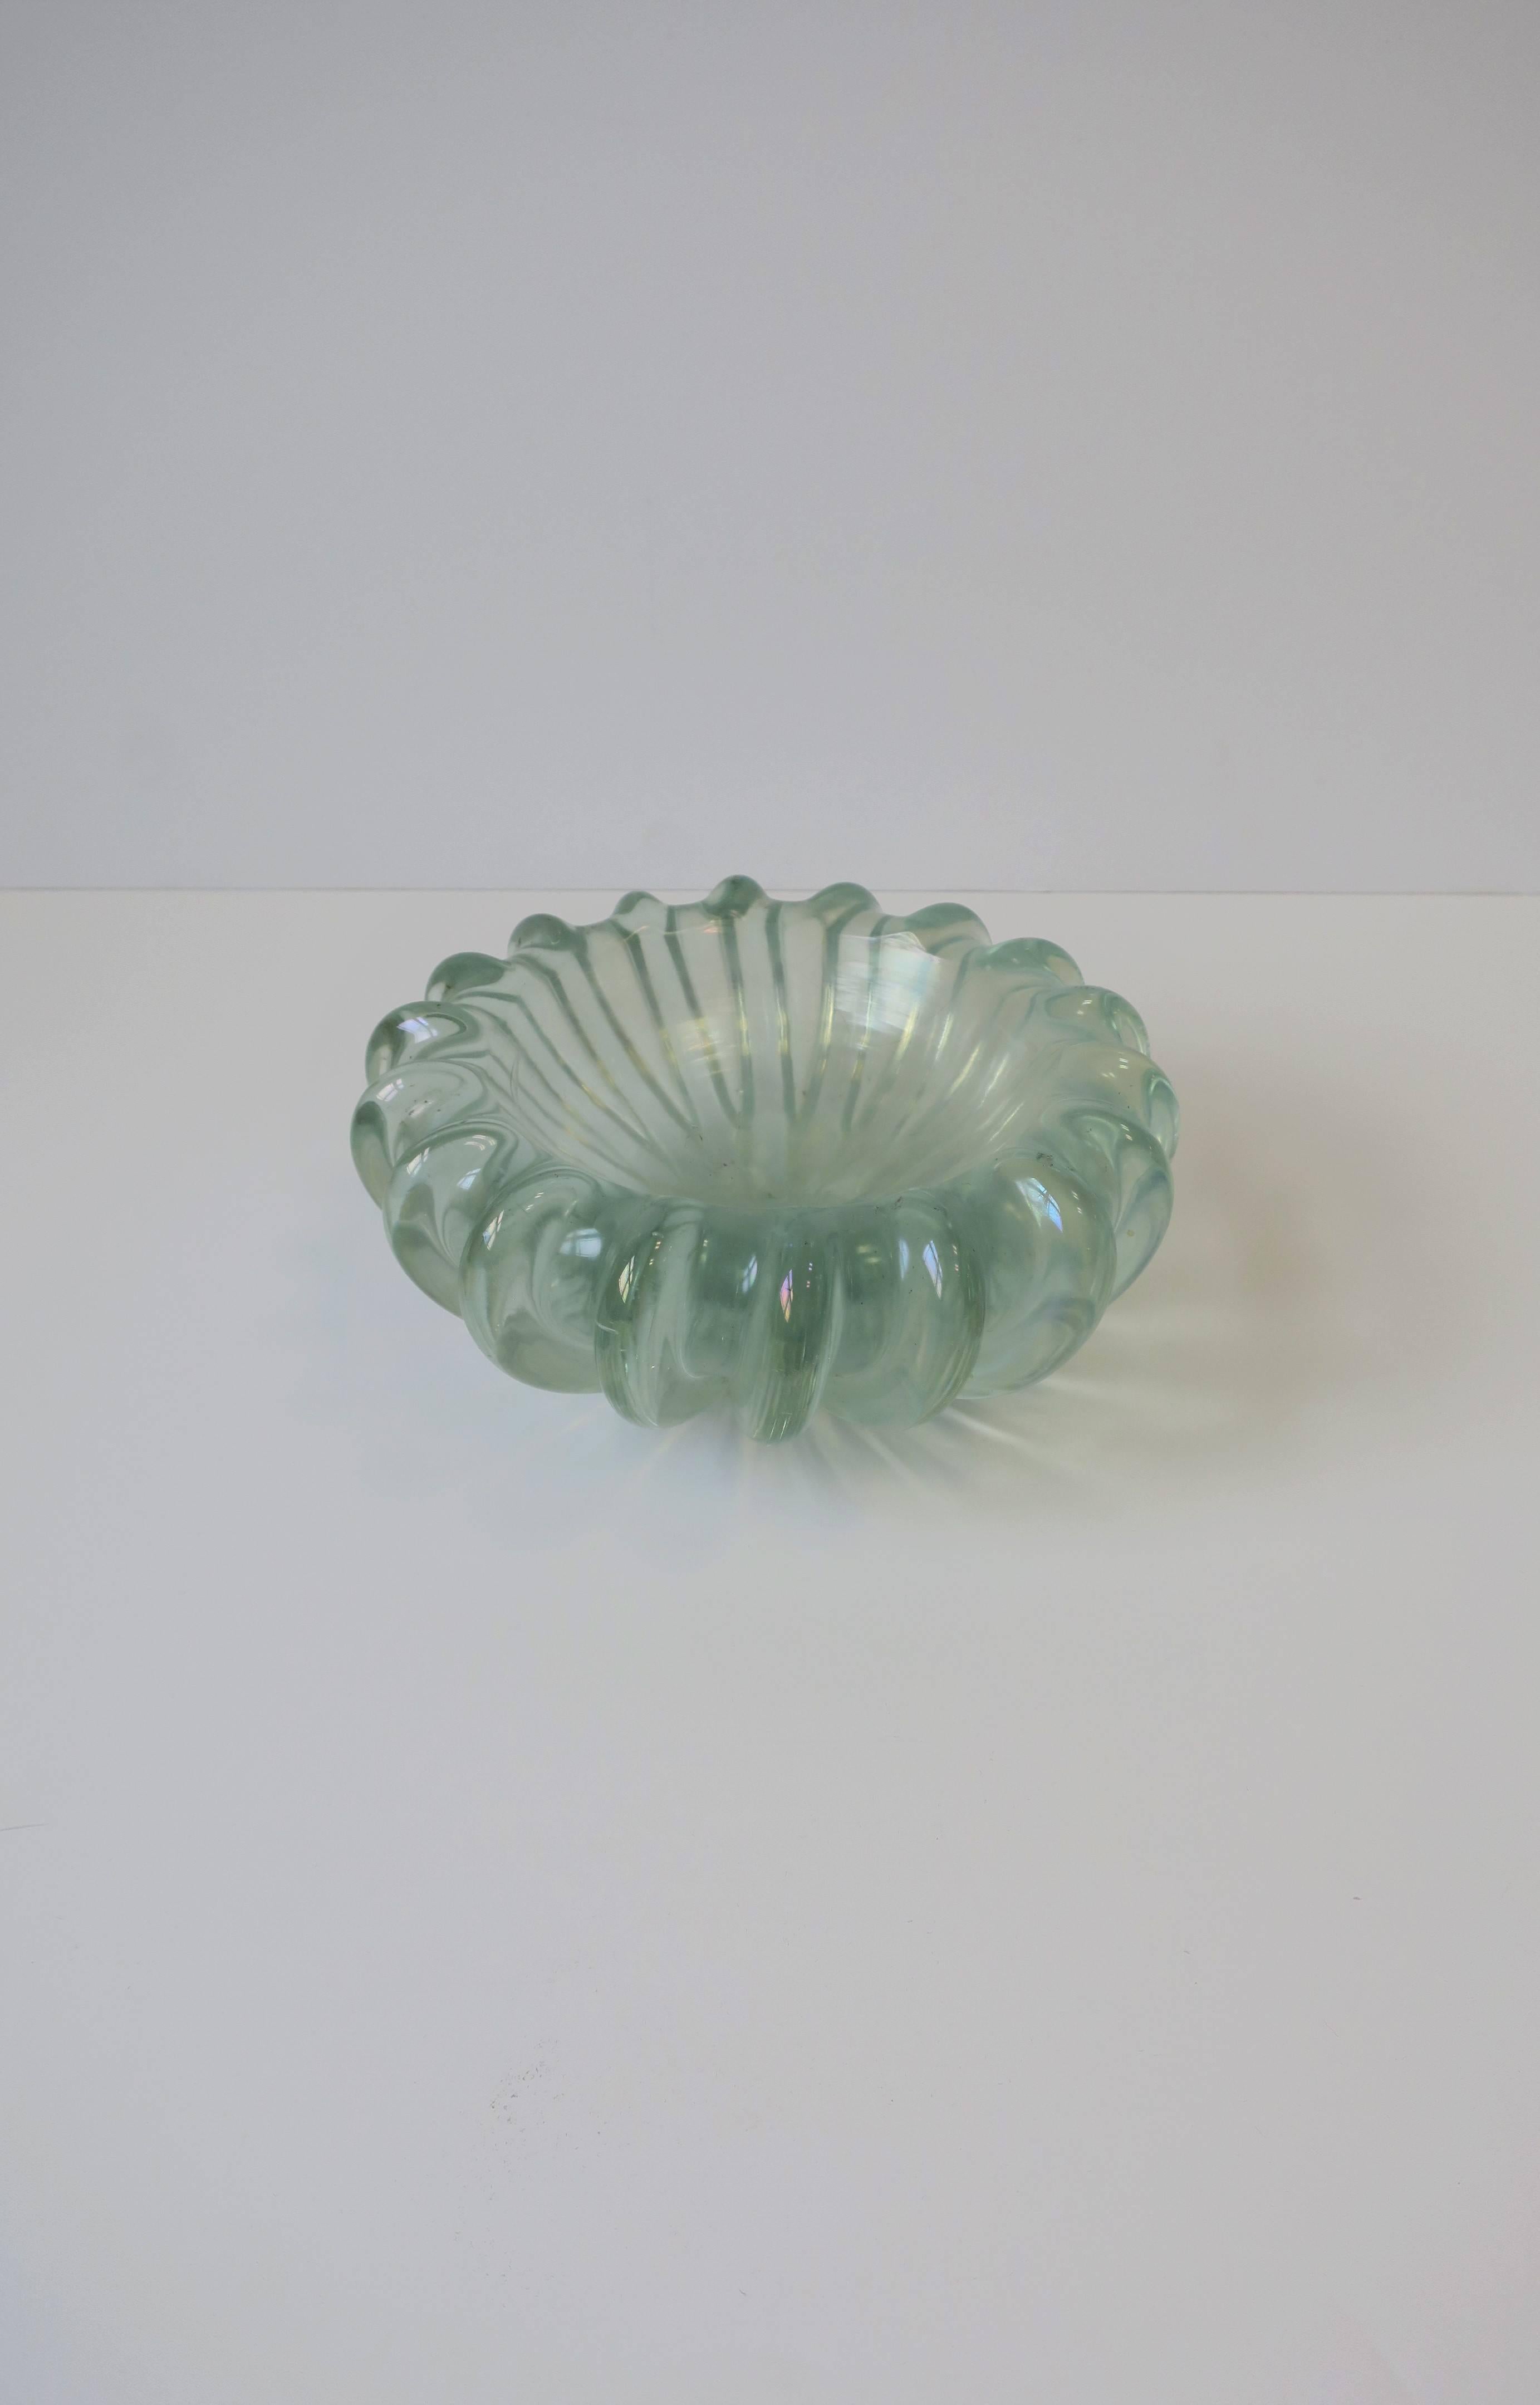 Il s'agit d'un très important et magnifique bol en verre d'art irisé de Murano avec un design cannelé, vers le milieu du 20e siècle, Italie. La teinte du verre d'art est un vert mousse de mer clair translucide avec une irisation chatoyante. Le bol